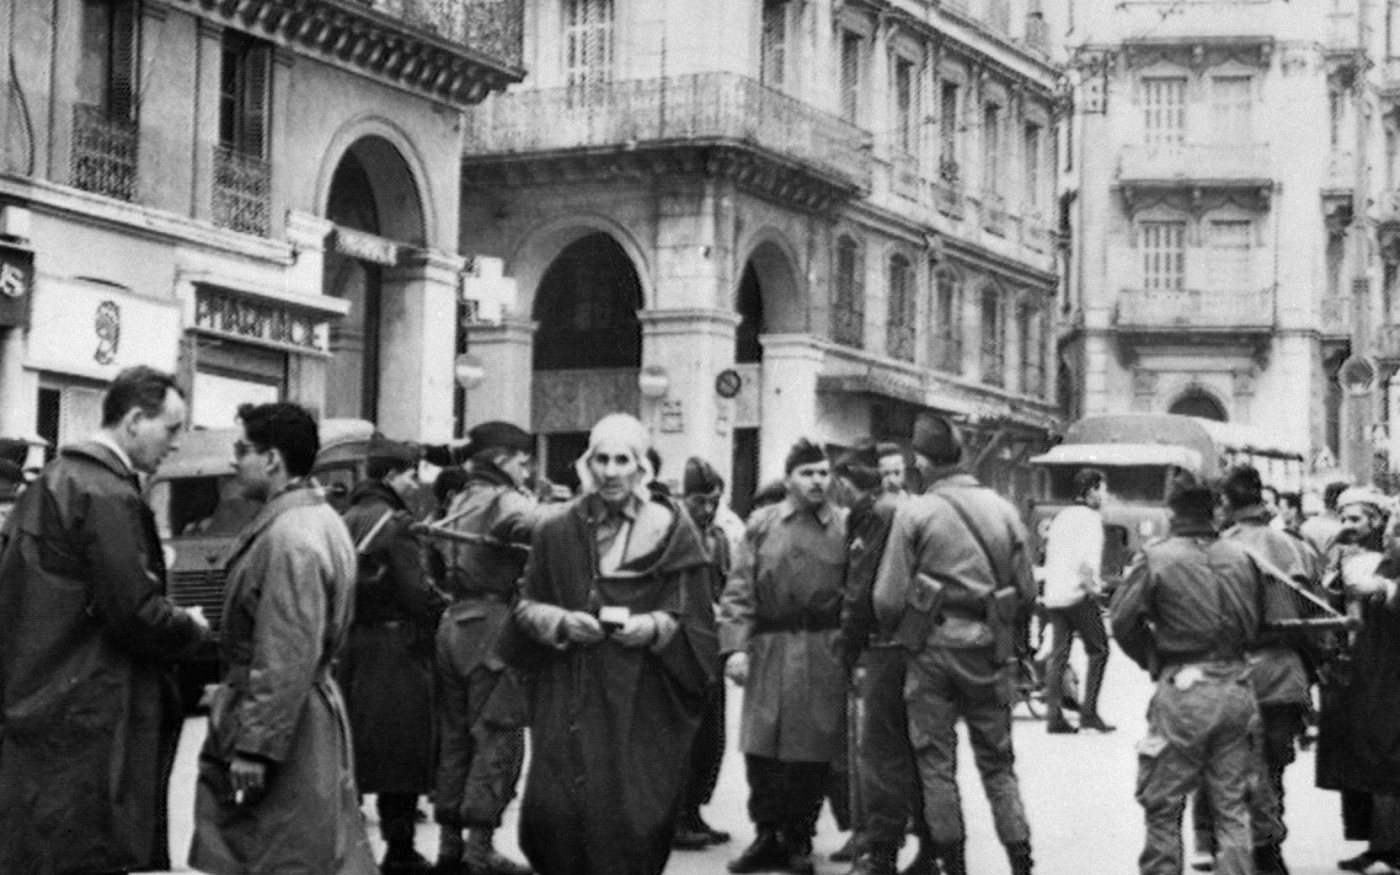 Des soldats français contrôlent l’identité de musulmans à un poste de contrôle, le 12 décembre 1960, en Algérie, quelques jours avant un communiqué de l’ONU reconnaissant le droit à l’autodétermination des Algériens (AFP)